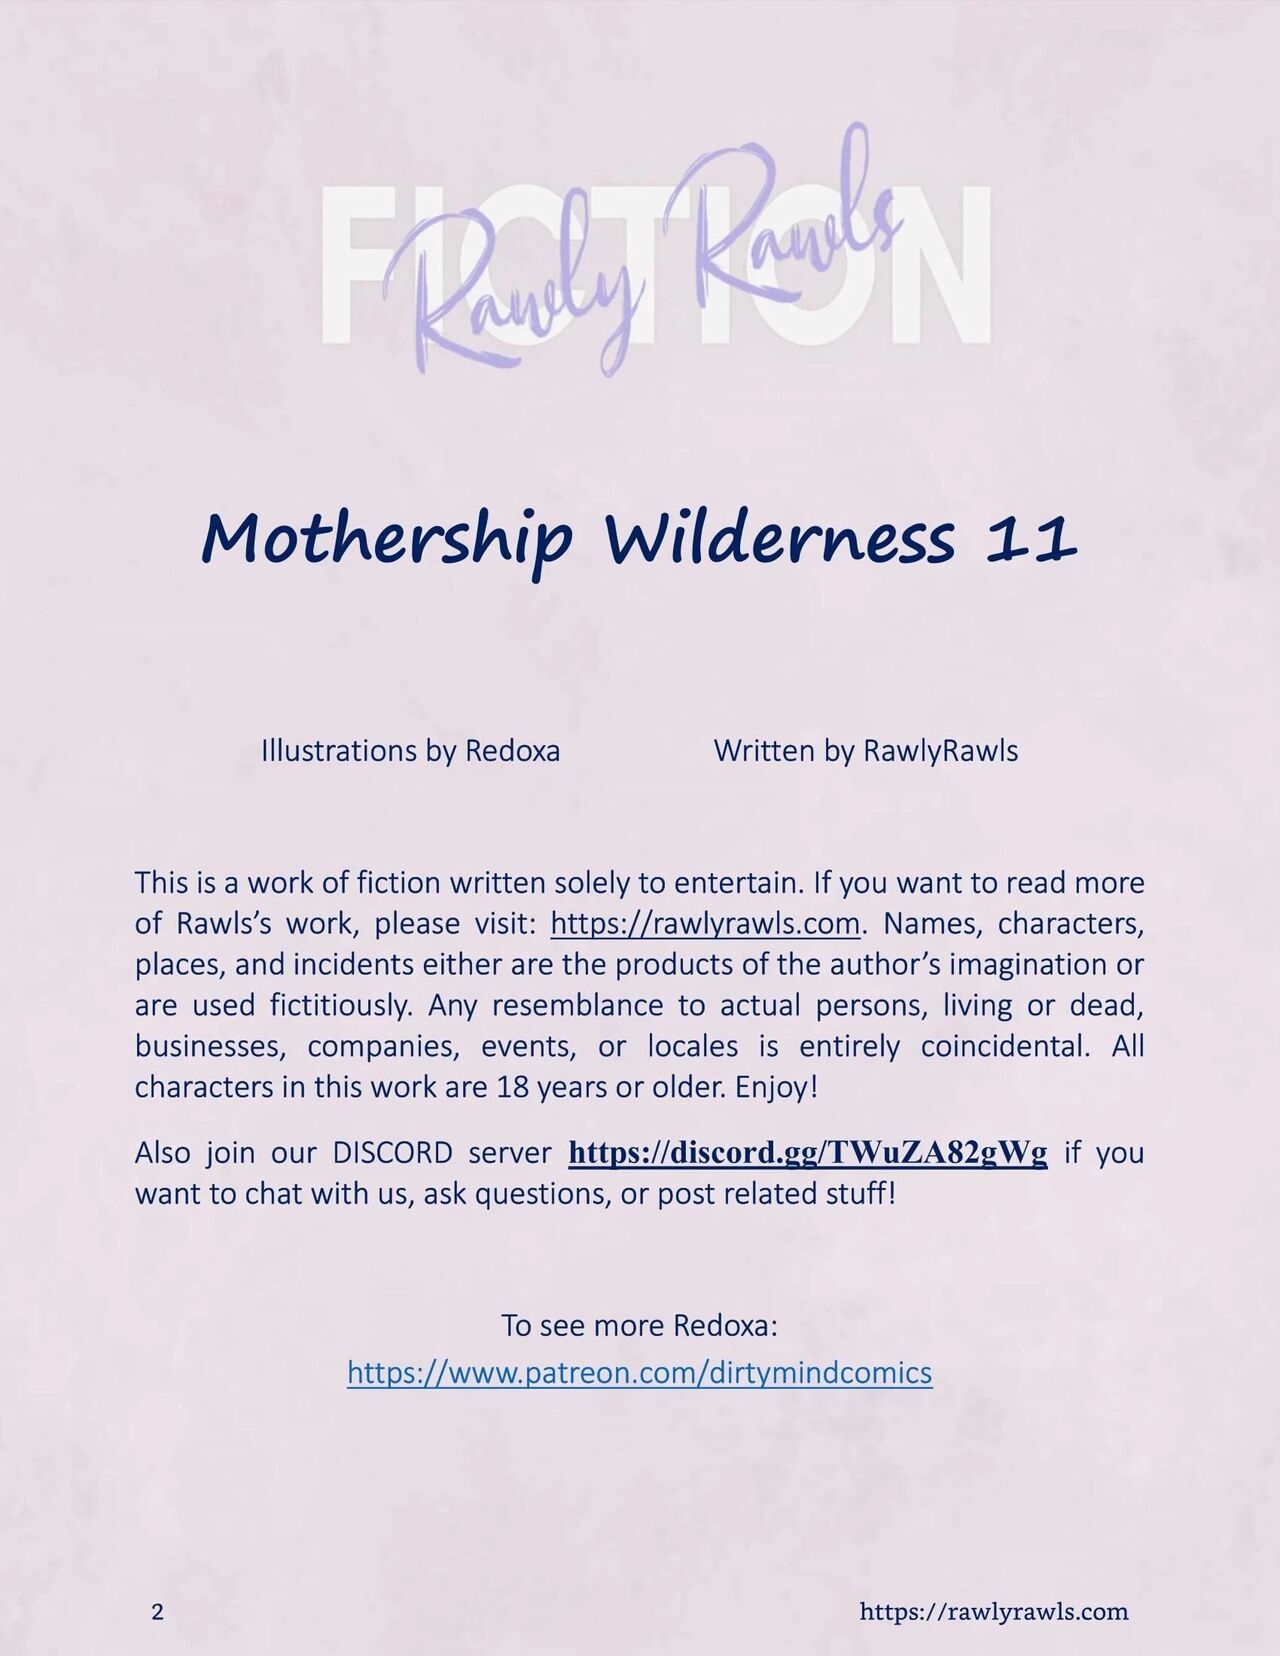 Mothership Wilderness [Redoxa , RawlyRawls] - 11 - english 1